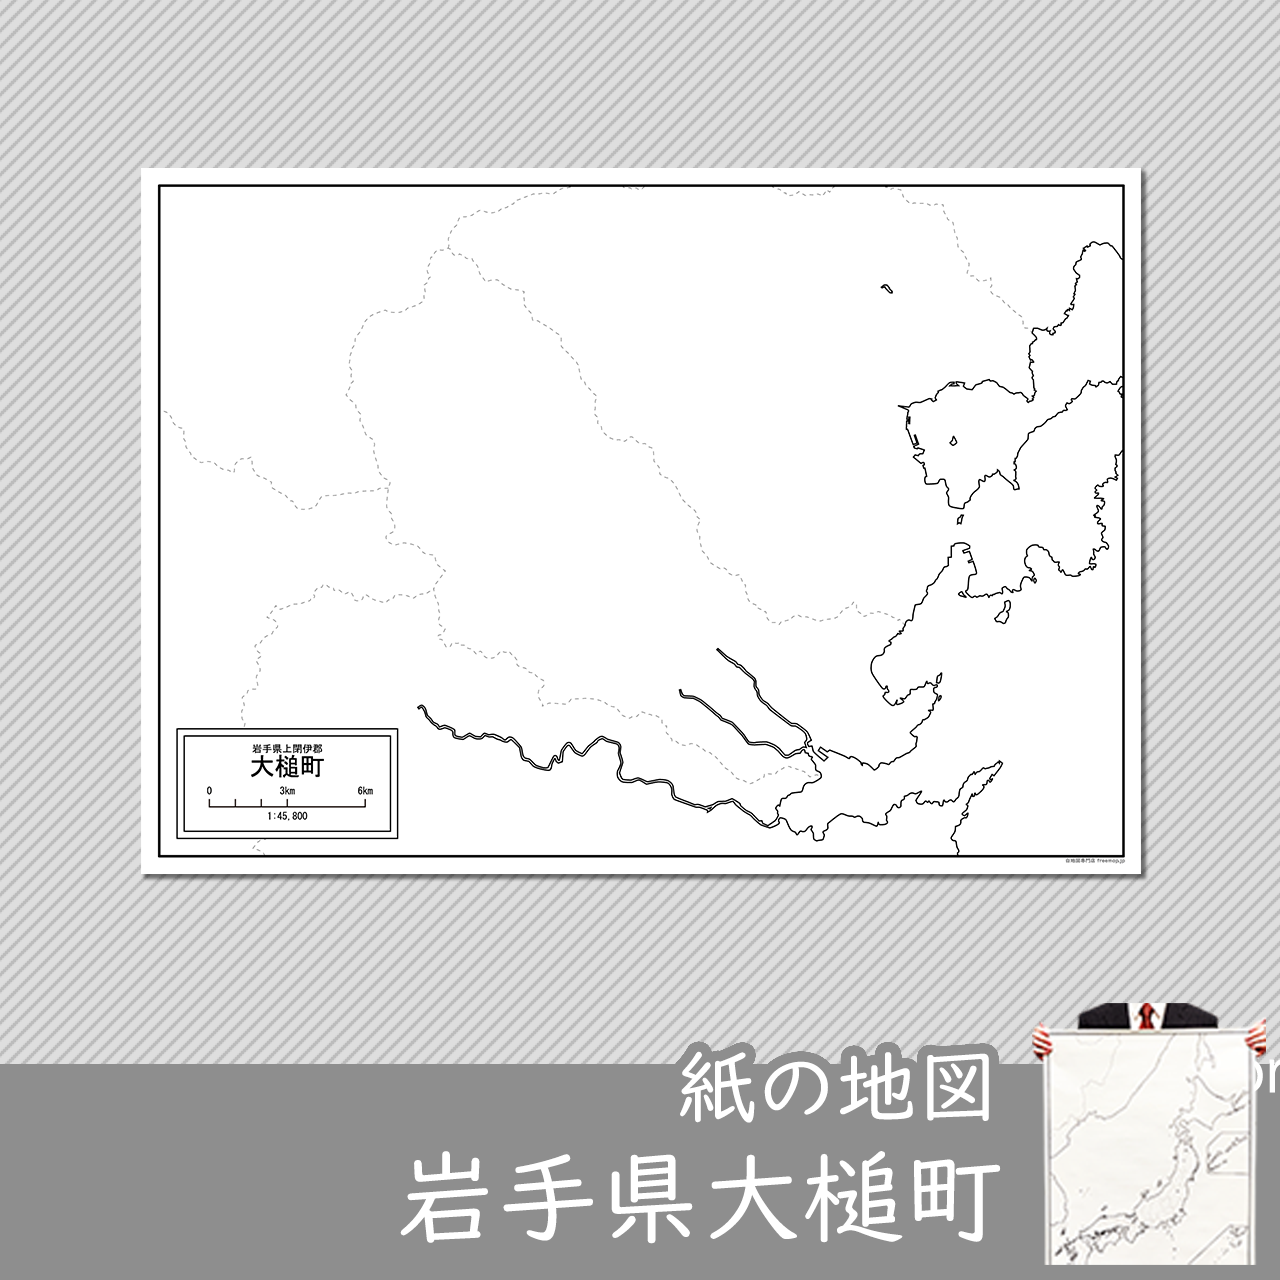 大槌町の紙の白地図のサムネイル